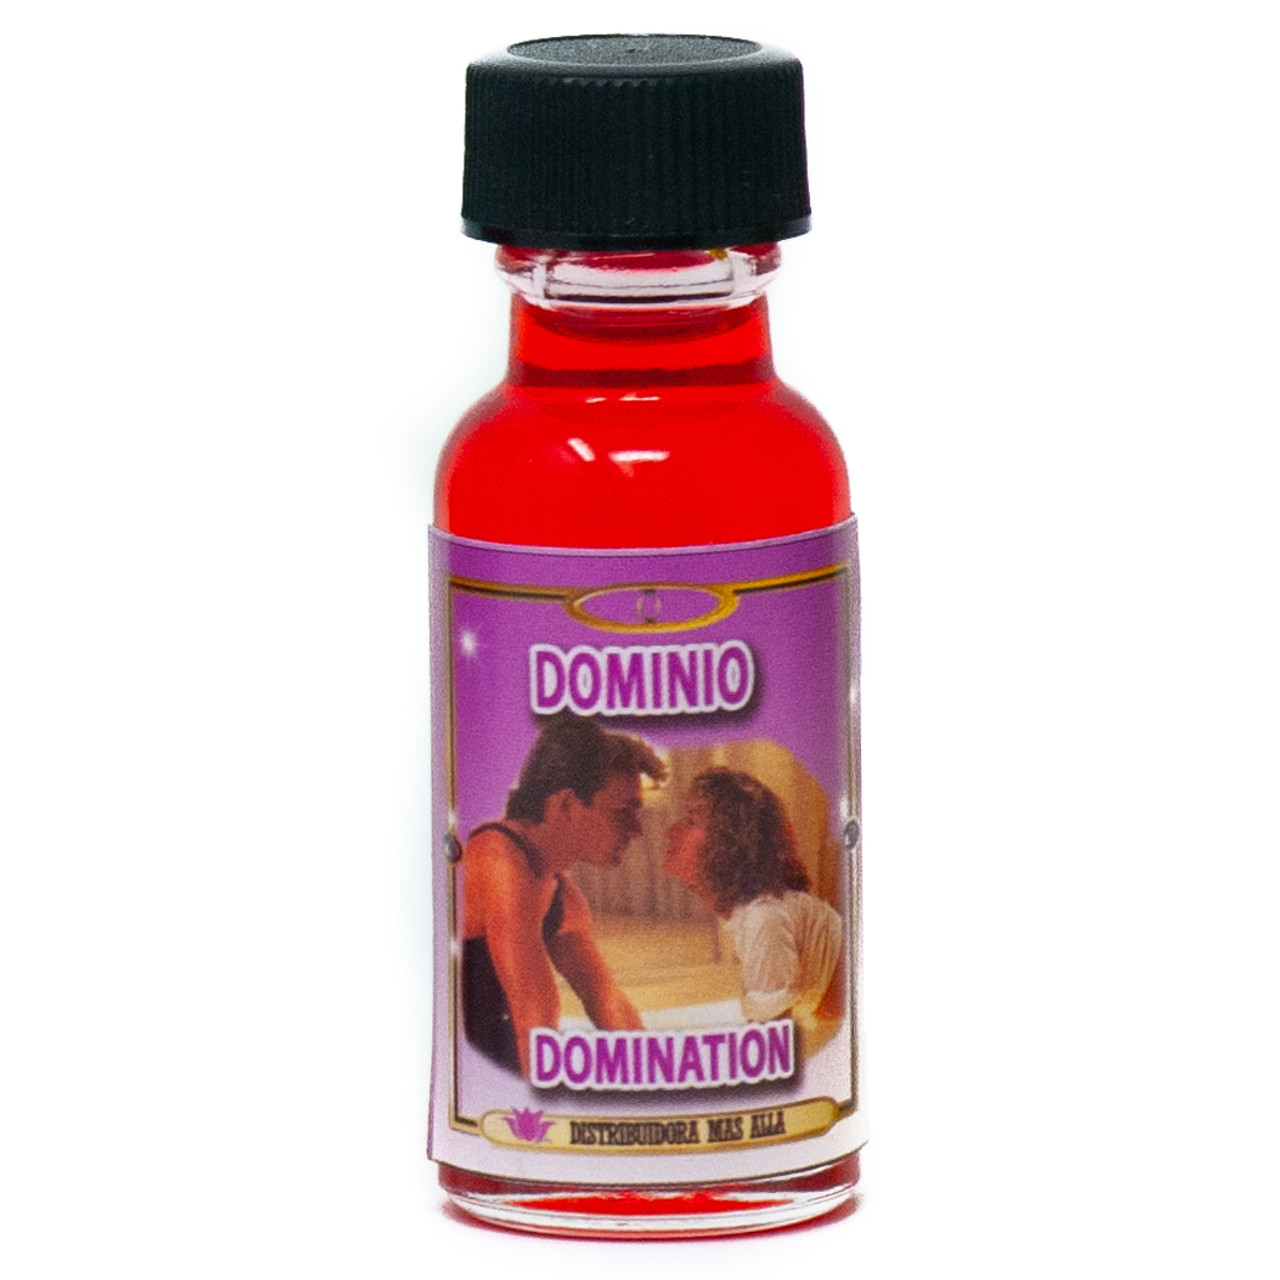 Aceite Dominio - Ritual Oil - Lot Of 6 Units Wholesale